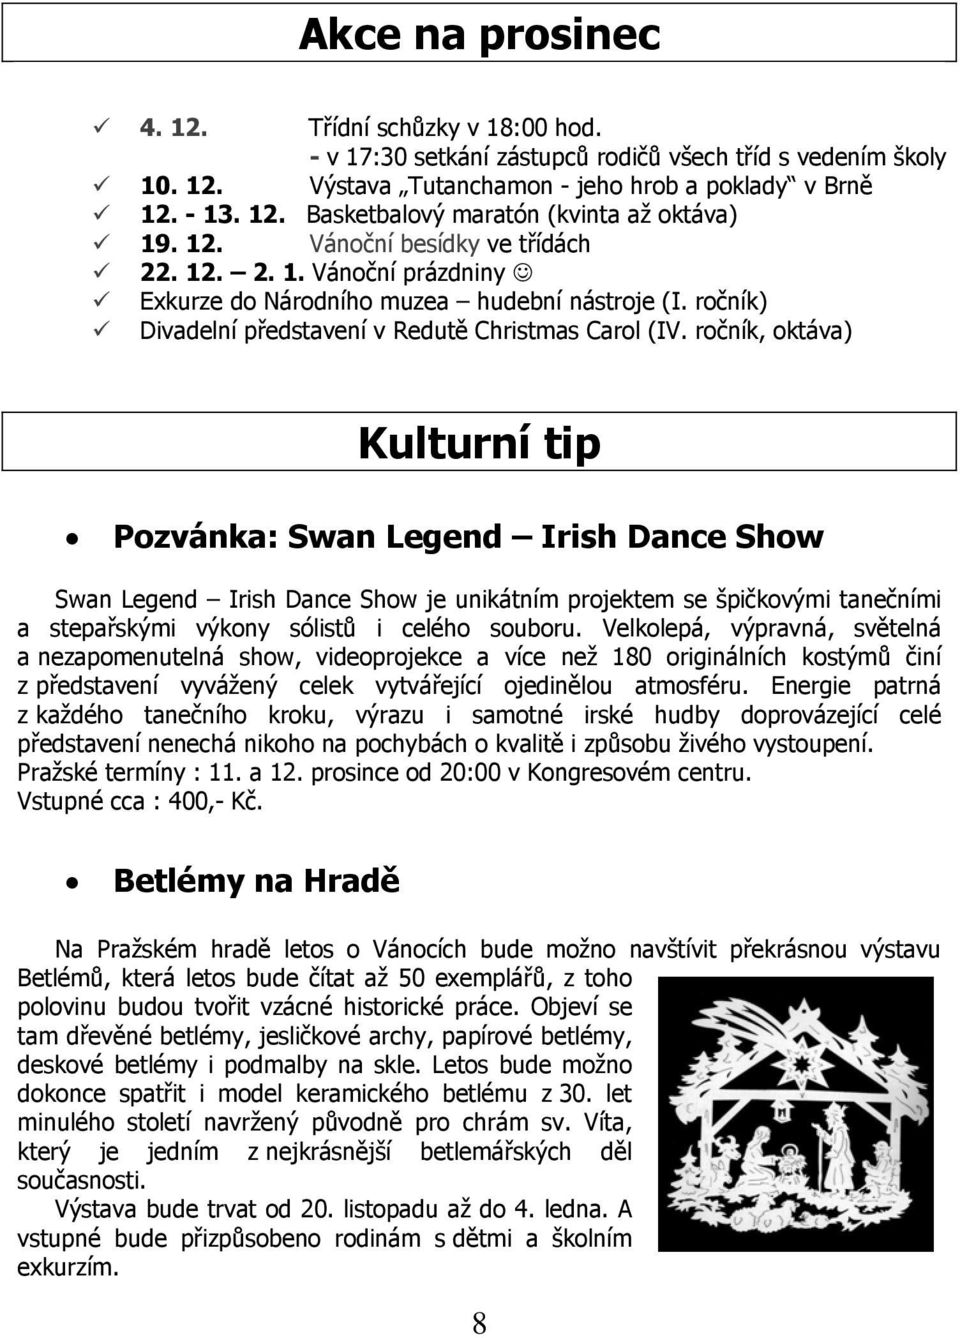 ročník, oktáva) Kulturní tip Pozvánka: Swan Legend Irish Dance Show Swan Legend Irish Dance Show je unikátním projektem se špičkovými tanečními a stepařskými výkony sólistů i celého souboru.